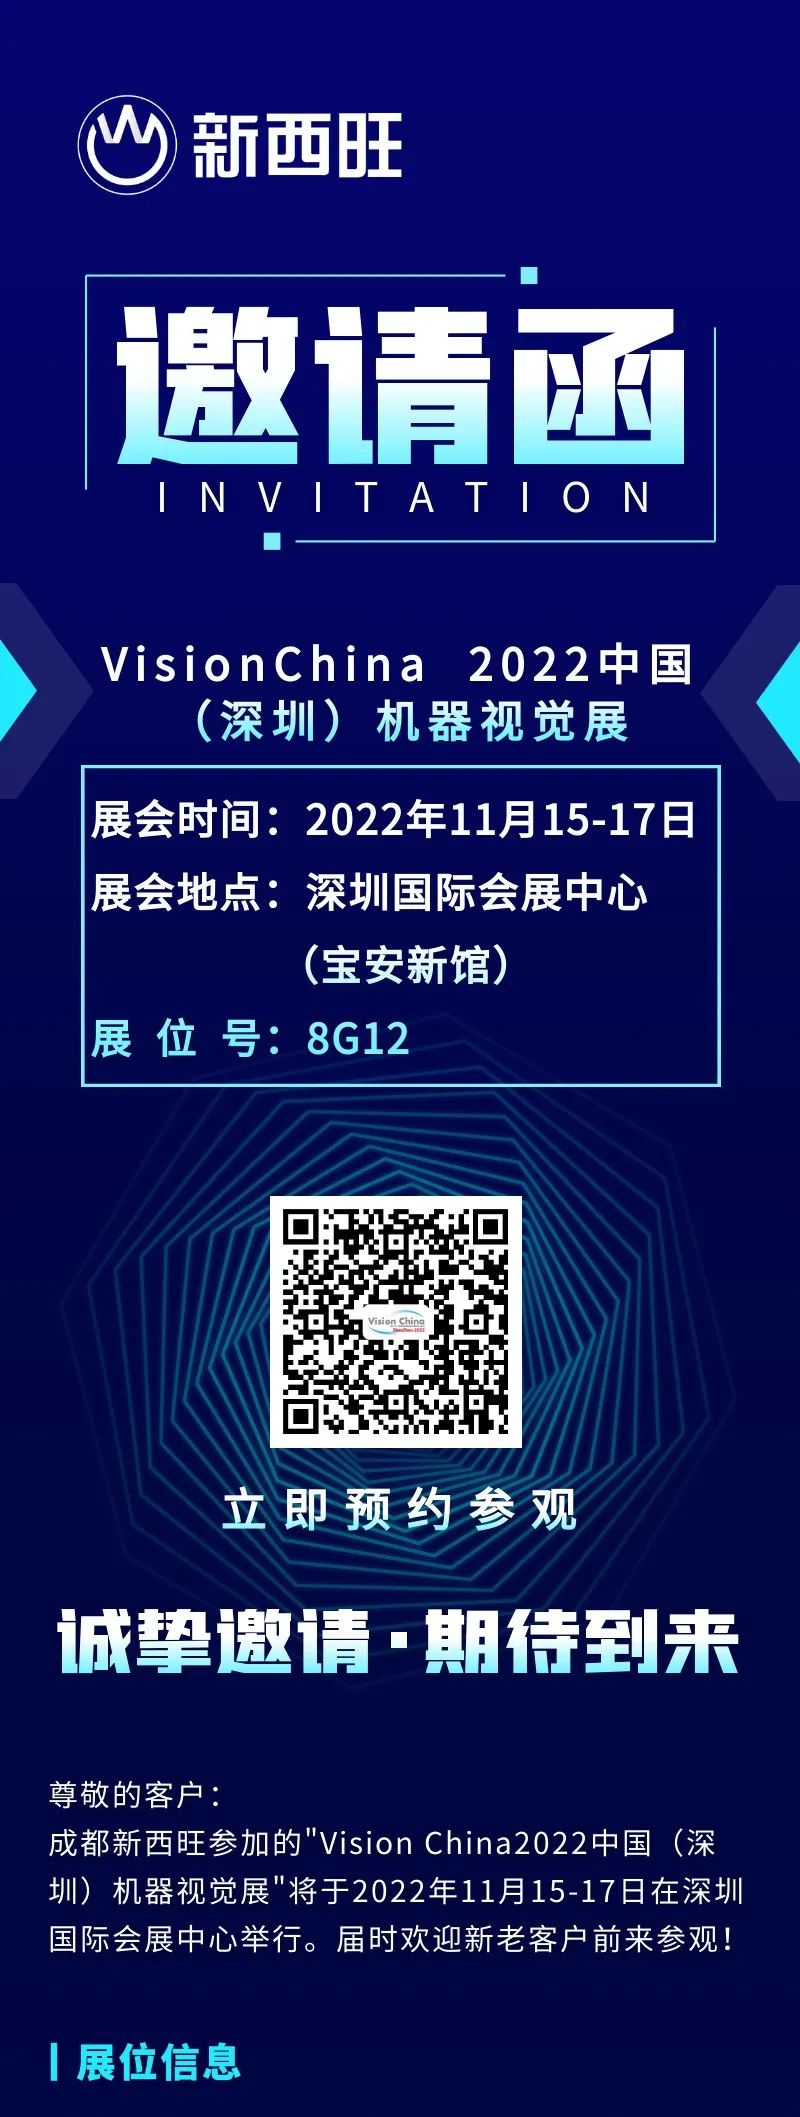 新西旺与您相约VisionChina 2022中国(深圳)机器视觉展(图1)